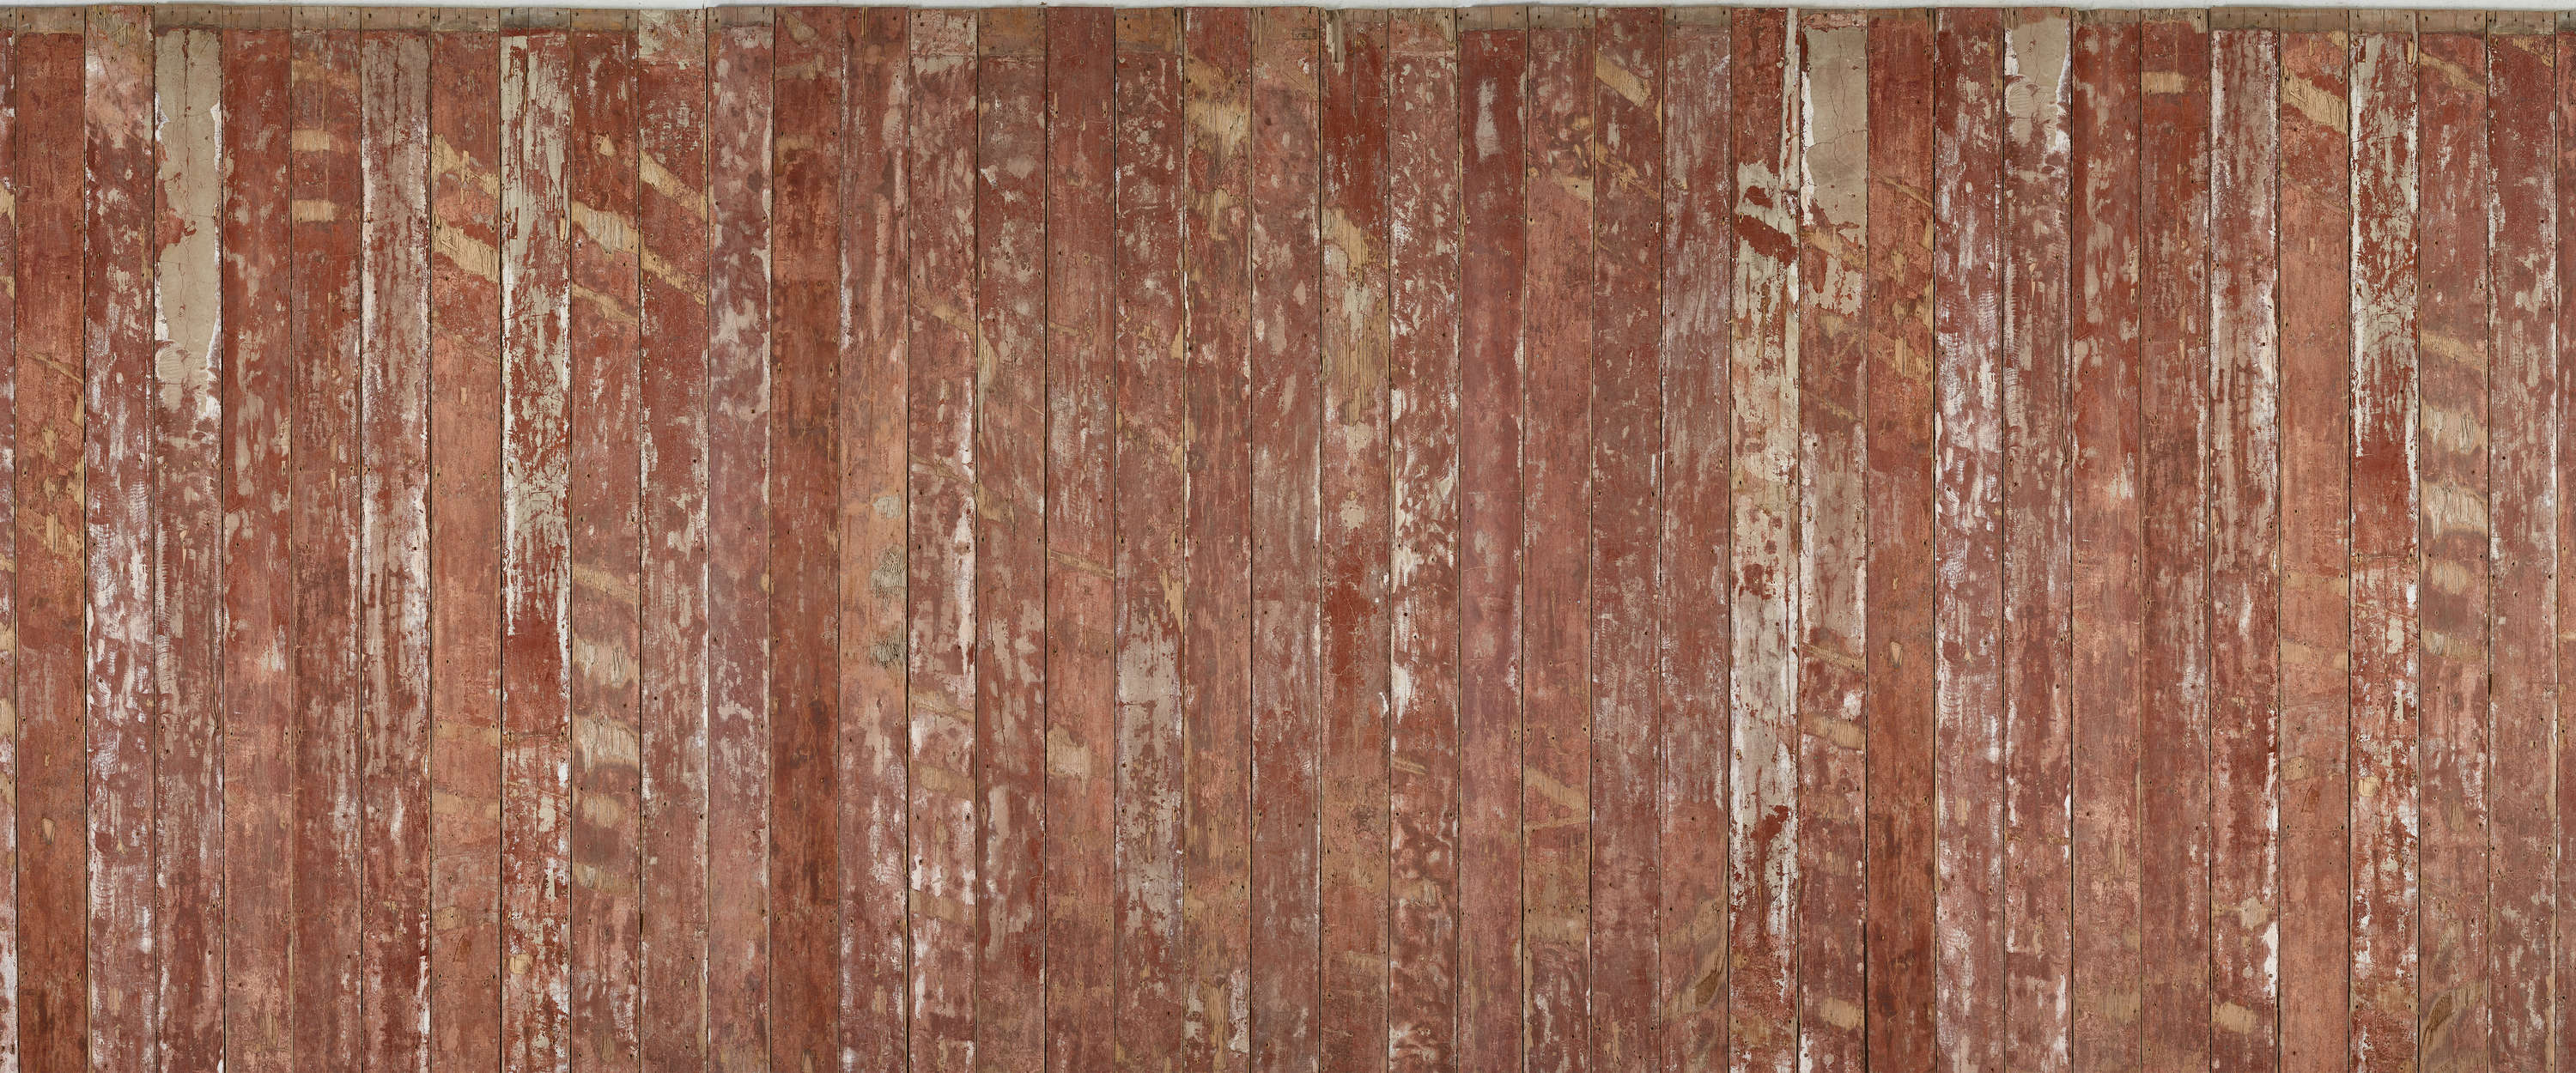             Tavole di legno rosso-marrone in ottica used look carta da parati
        